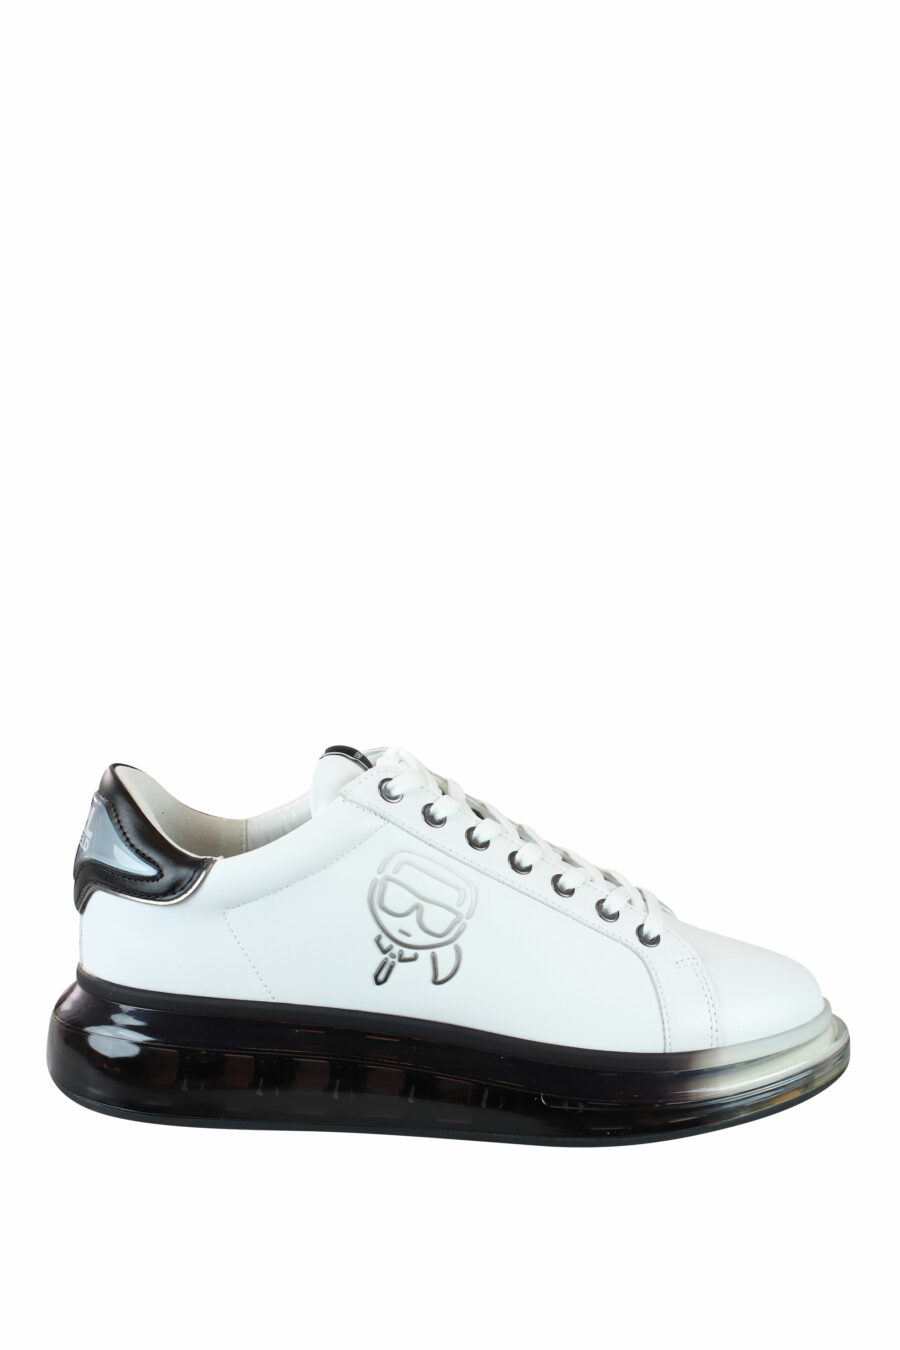 Zapatillas blancas con suela negra y logo degrade gris en silueta - IMG 0037